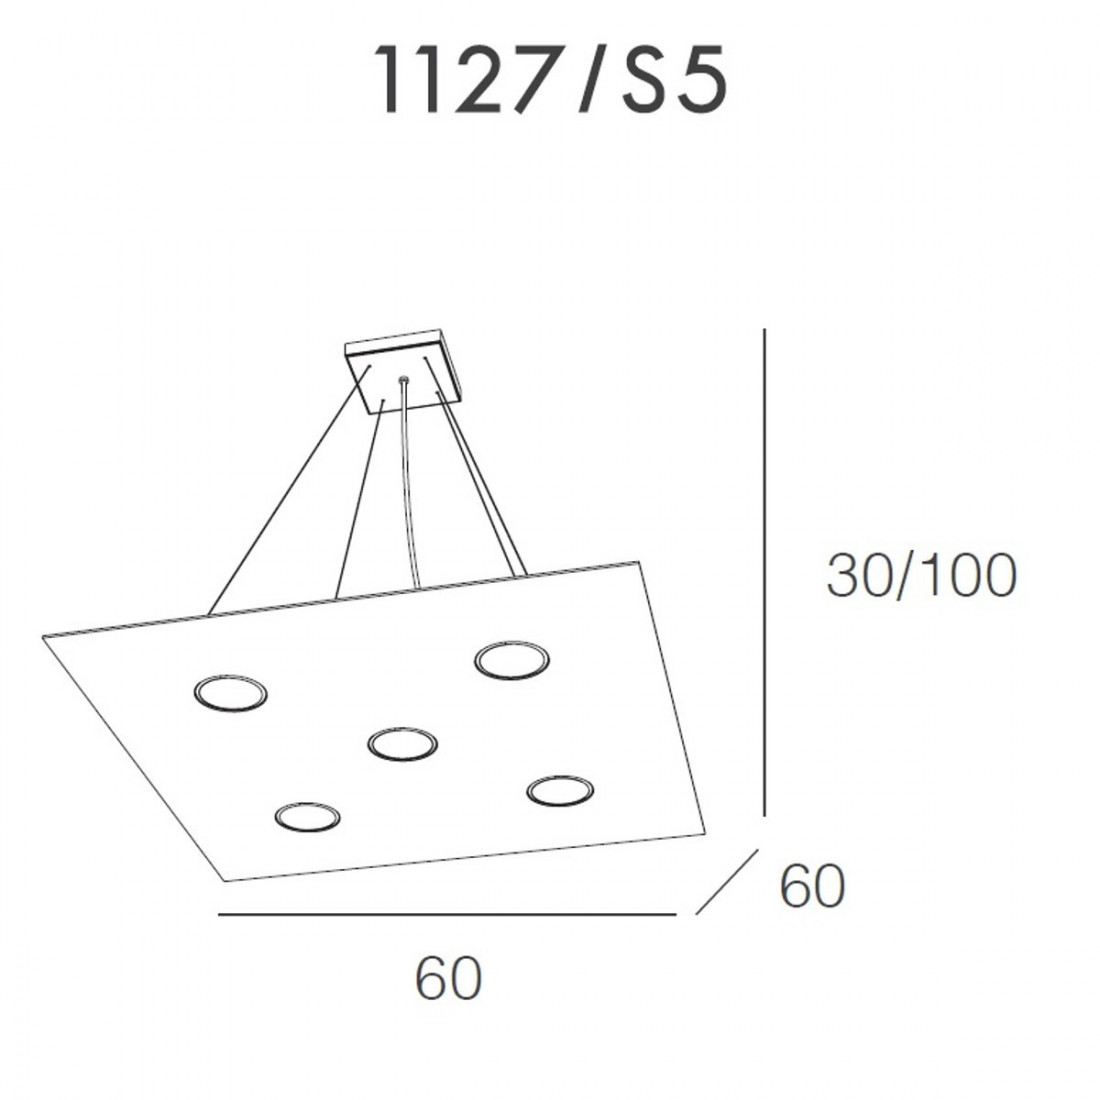 Lampadario TP-AREA 1127 S5 45W Gx53 Led 60x60 monoemissione metallo bianco sospensione moderna quadrata